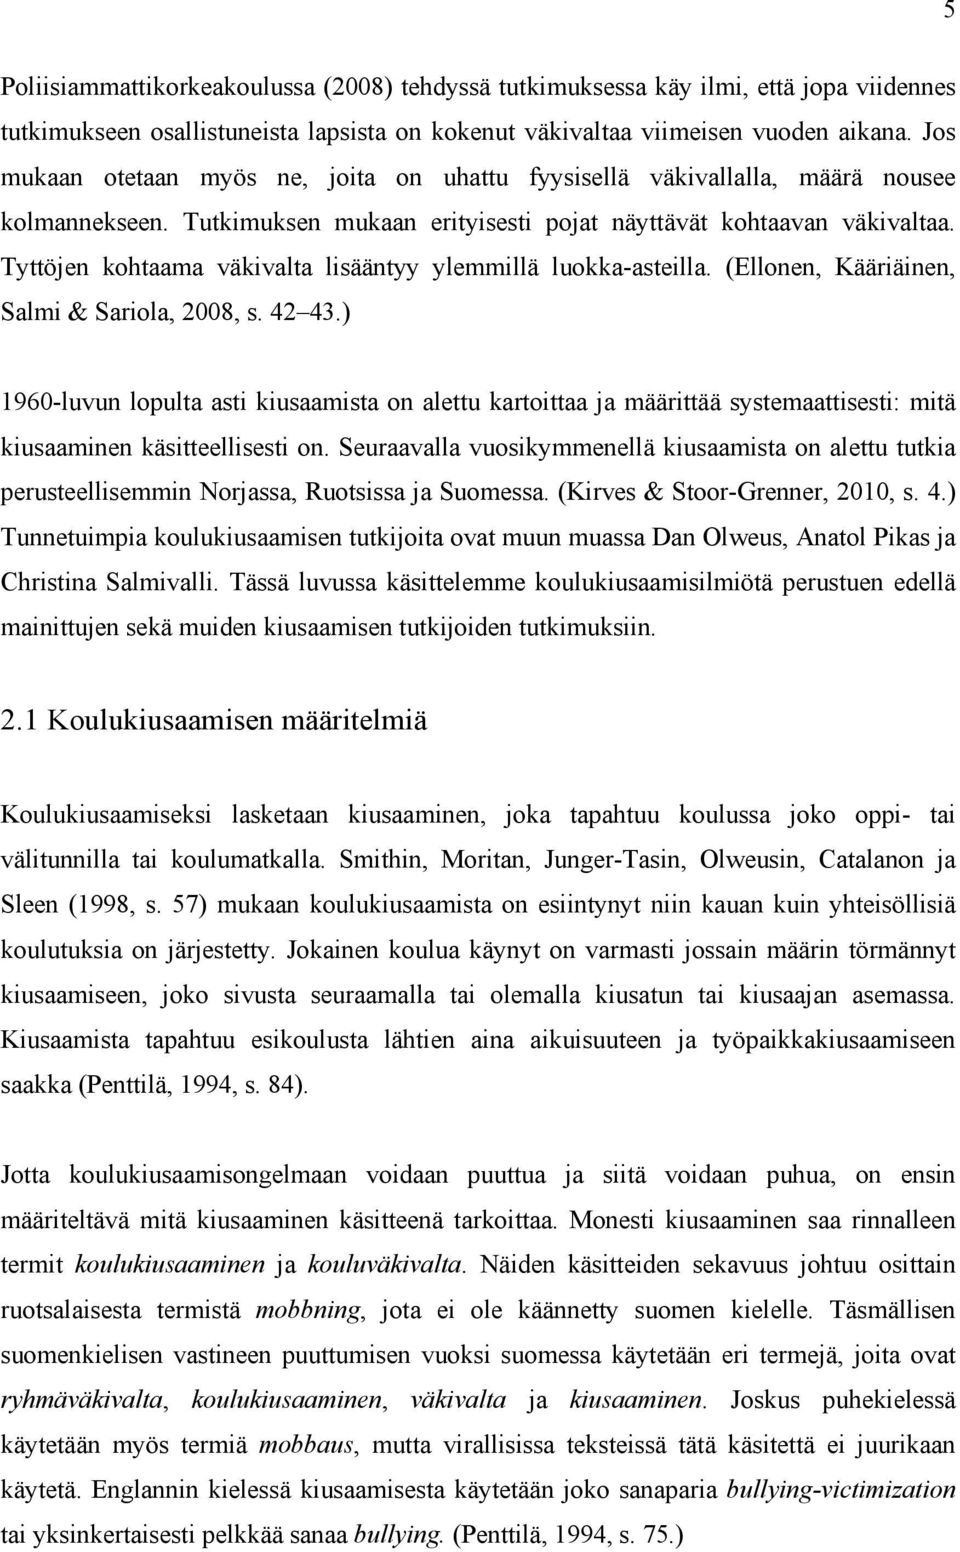 Tyttöjen kohtaama väkivalta lisääntyy ylemmillä luokka-asteilla. (Ellonen, Kääriäinen, Salmi & Sariola, 2008, s. 42 43.